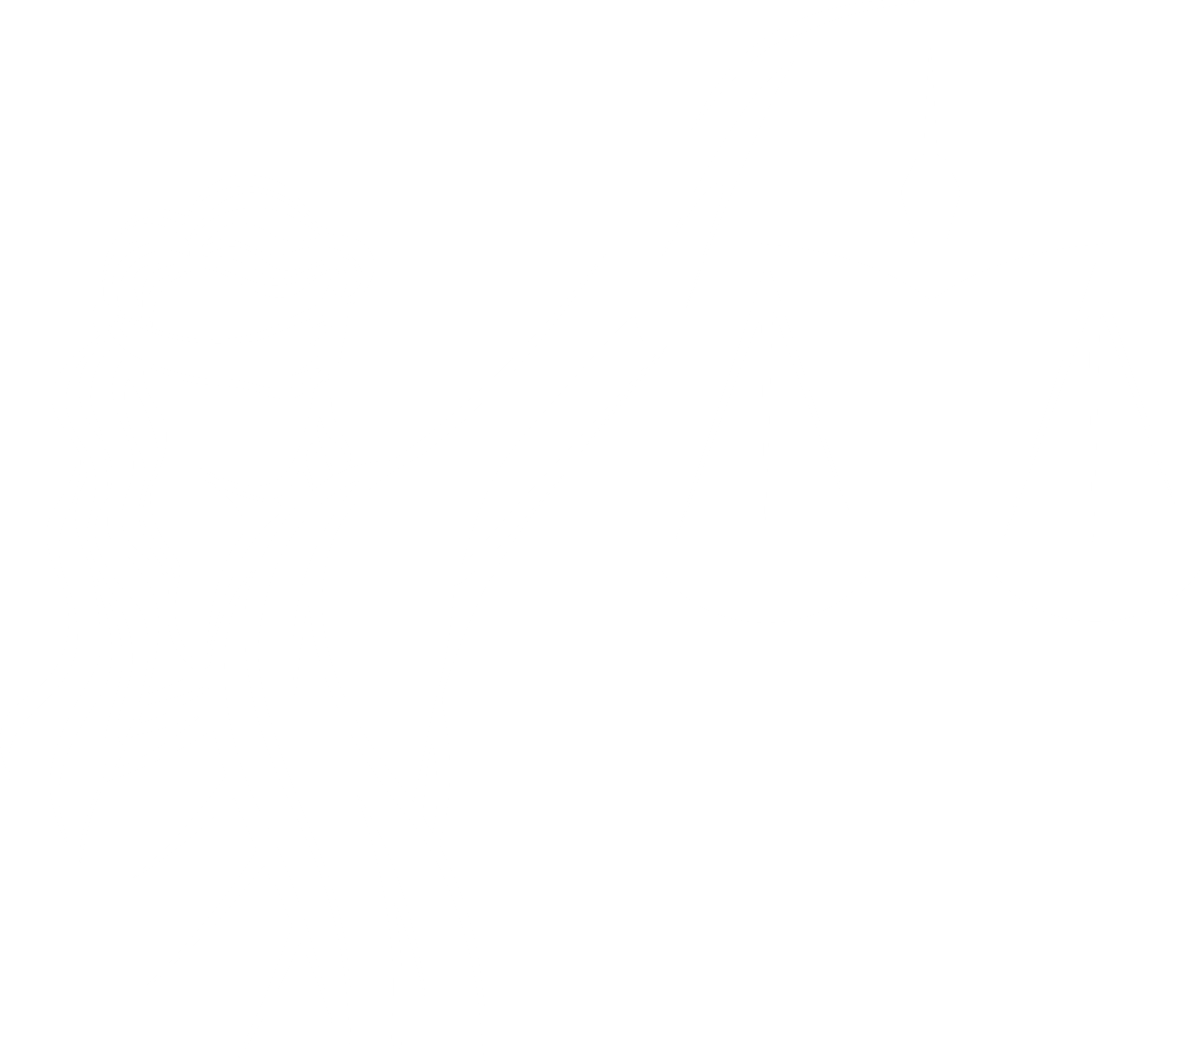 https://tristanlegal.com/wp-content/uploads/2020/08/kisspng-positive-law-justice-themis-lawyer-5b2668e947a1d6.1872677115292438812934.png